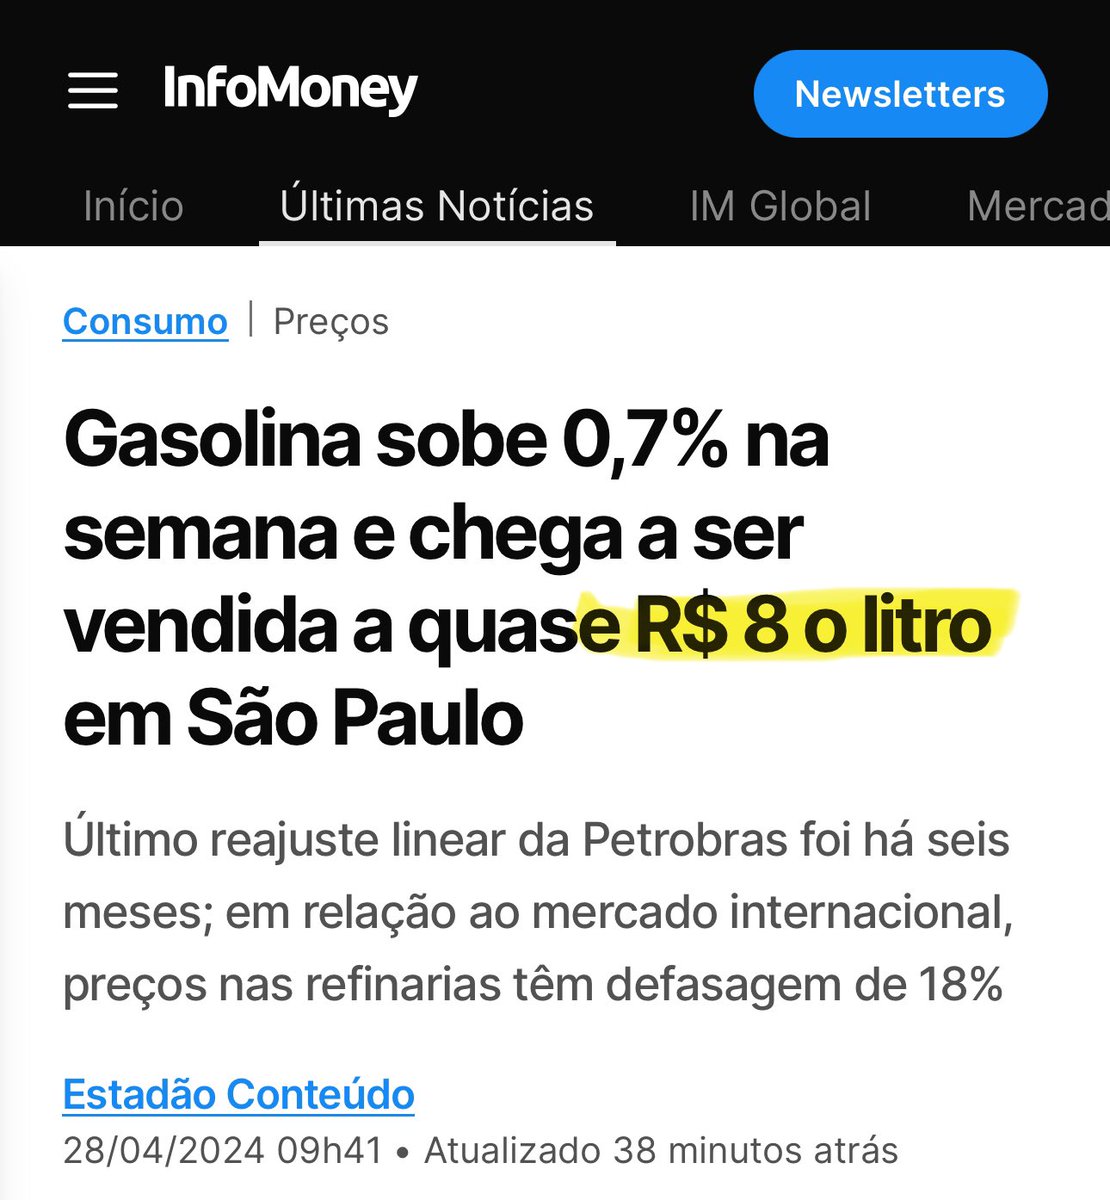 Gasolina de pandemia, sem pandemia e com petróleo bem abaixo do preço da pandemia.

Ah! E com Petrobras ainda segurando o preço.

KKKKKKKKKKKKKKKKKKKKKKKK